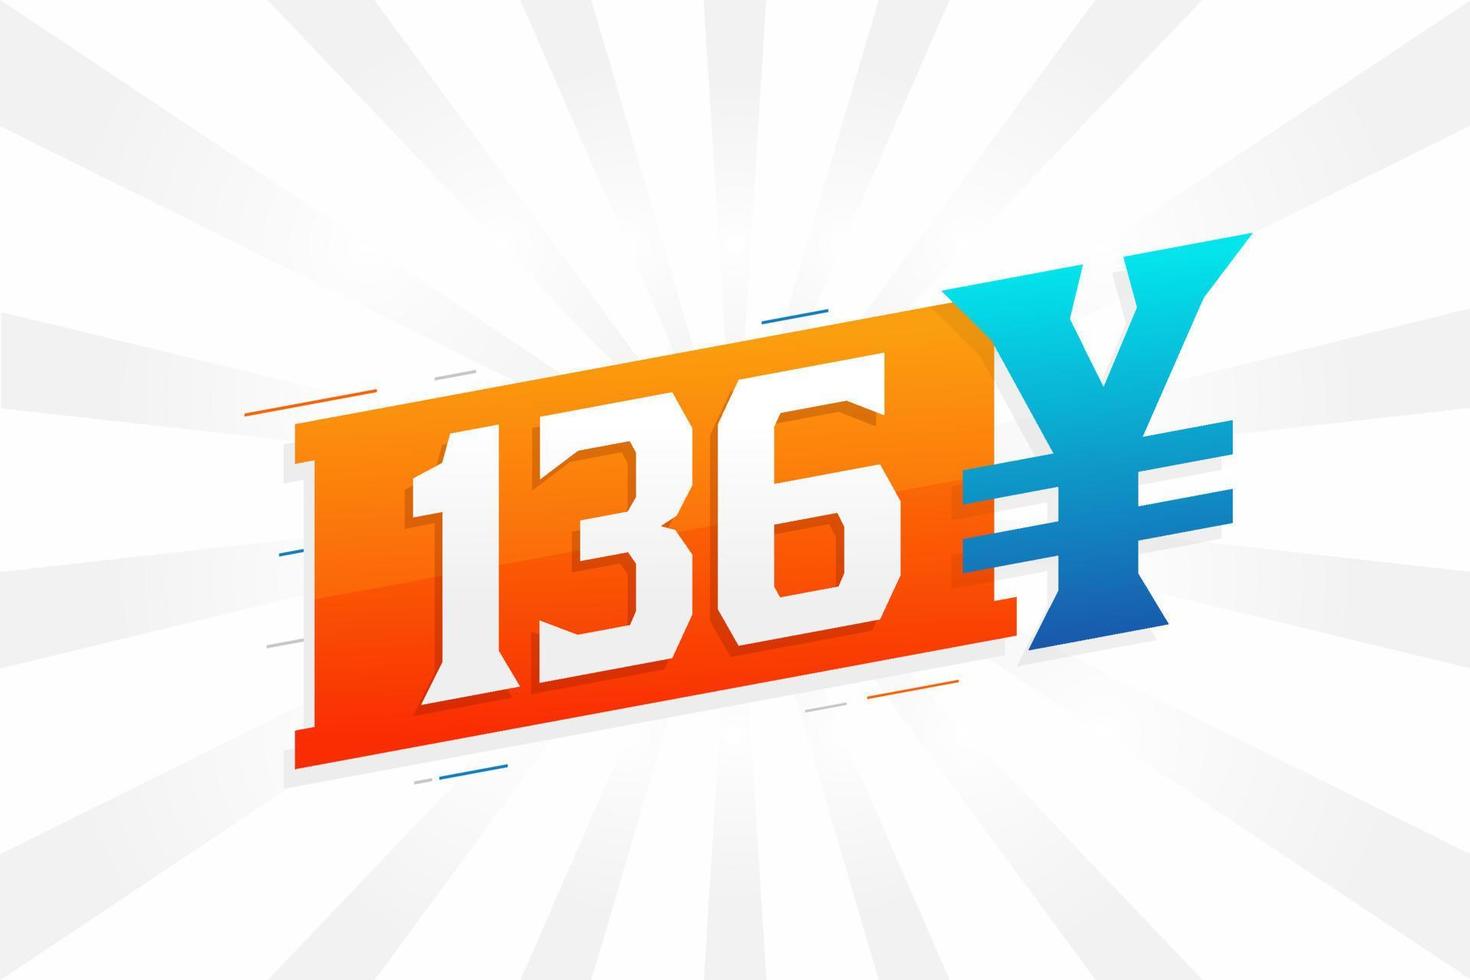 Símbolo de texto vectorial de moneda china de 136 yuanes. 136 yen moneda japonesa dinero stock vector